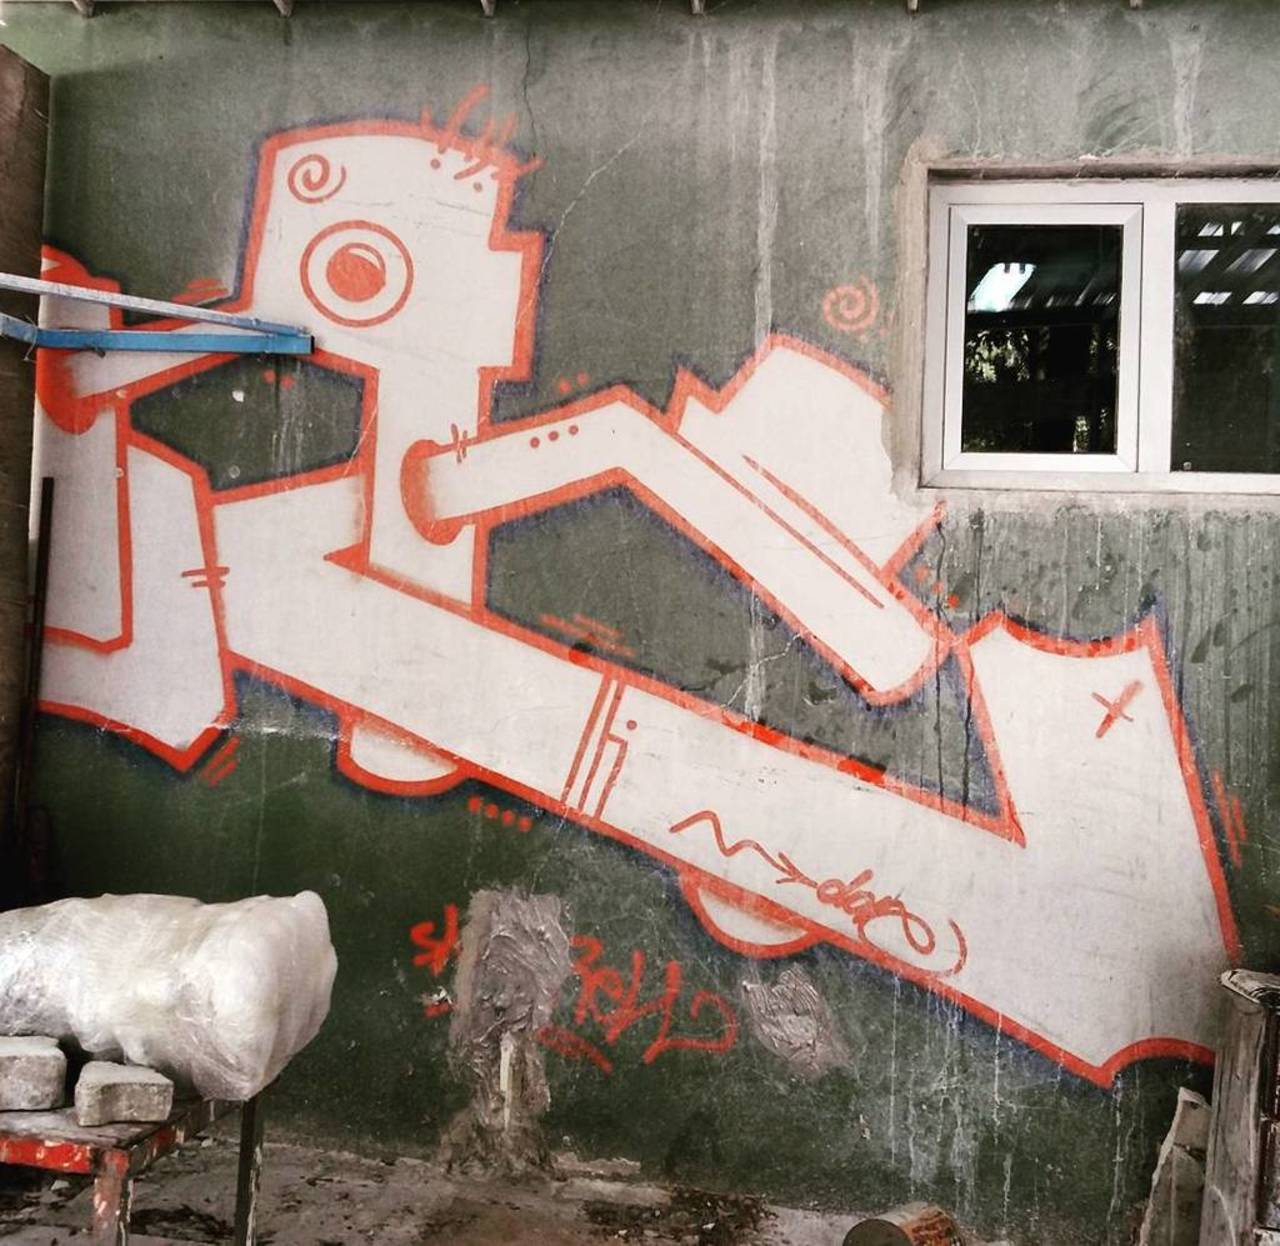 #dsb_graff @rsa_graffiti #ingf@streetawesome #streetart #urbanart #graffitiart #graffiti #instagraffiti #streetartp… https://t.co/H9Ug7hytoo